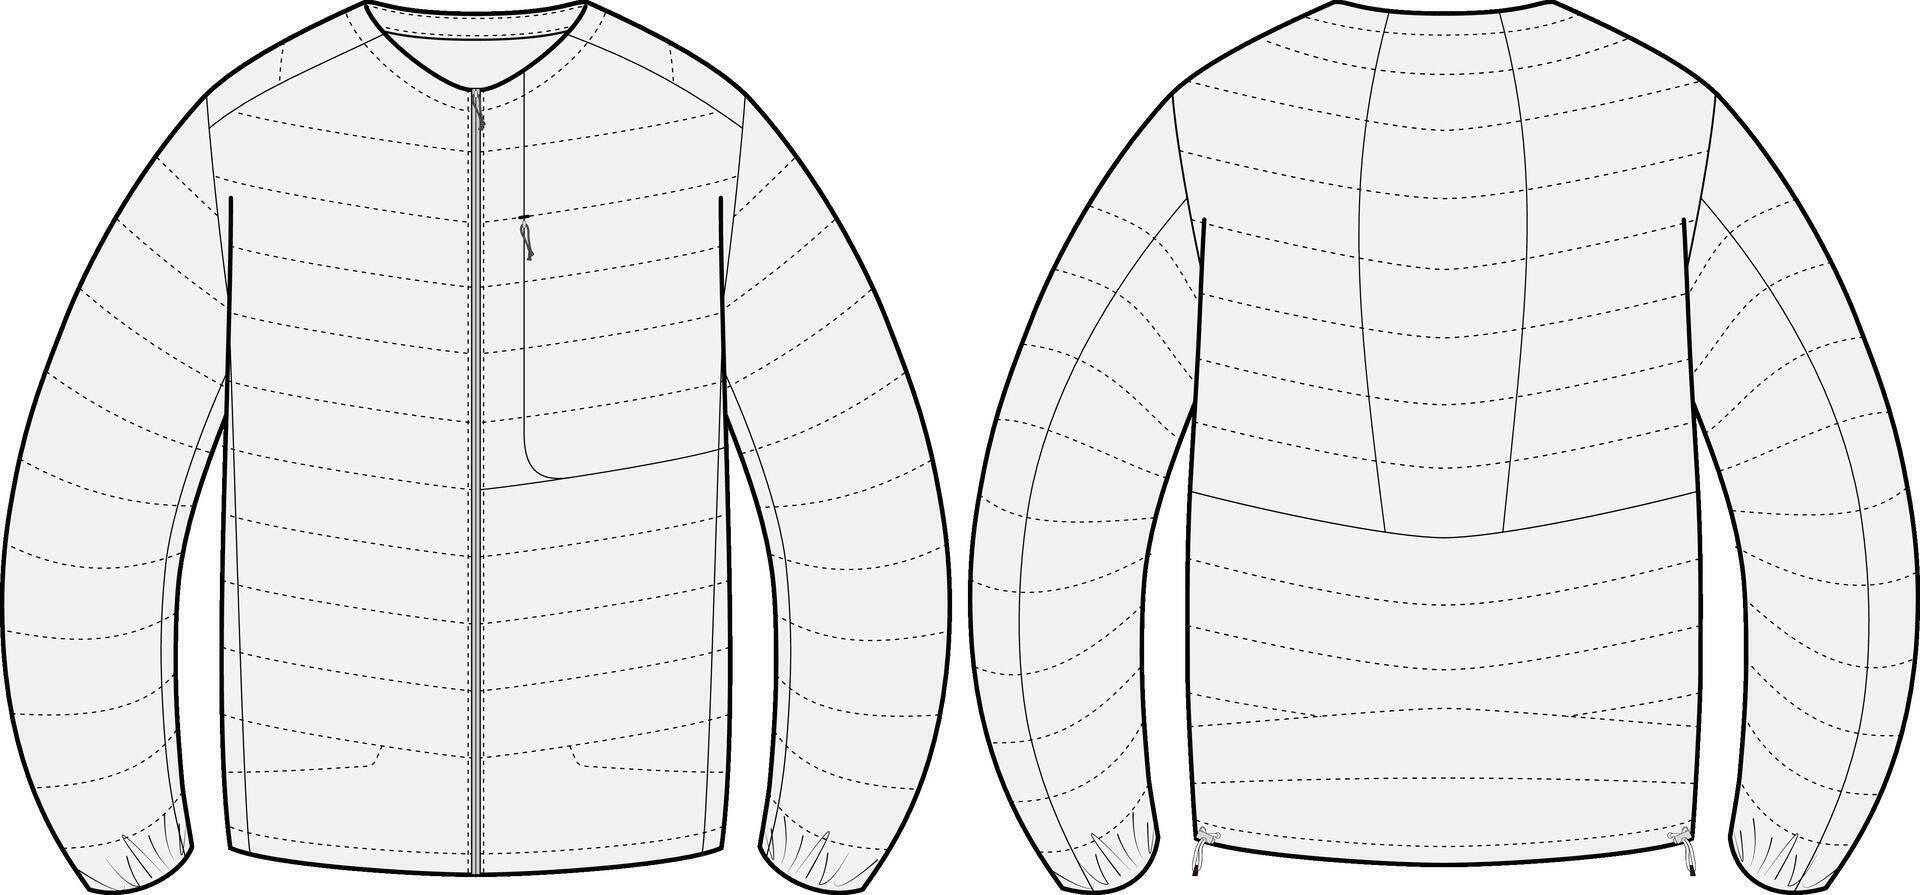 largo manga nylon fumador chaqueta diseño vector modelo con frente y espalda vista, unisexo invierno chaqueta